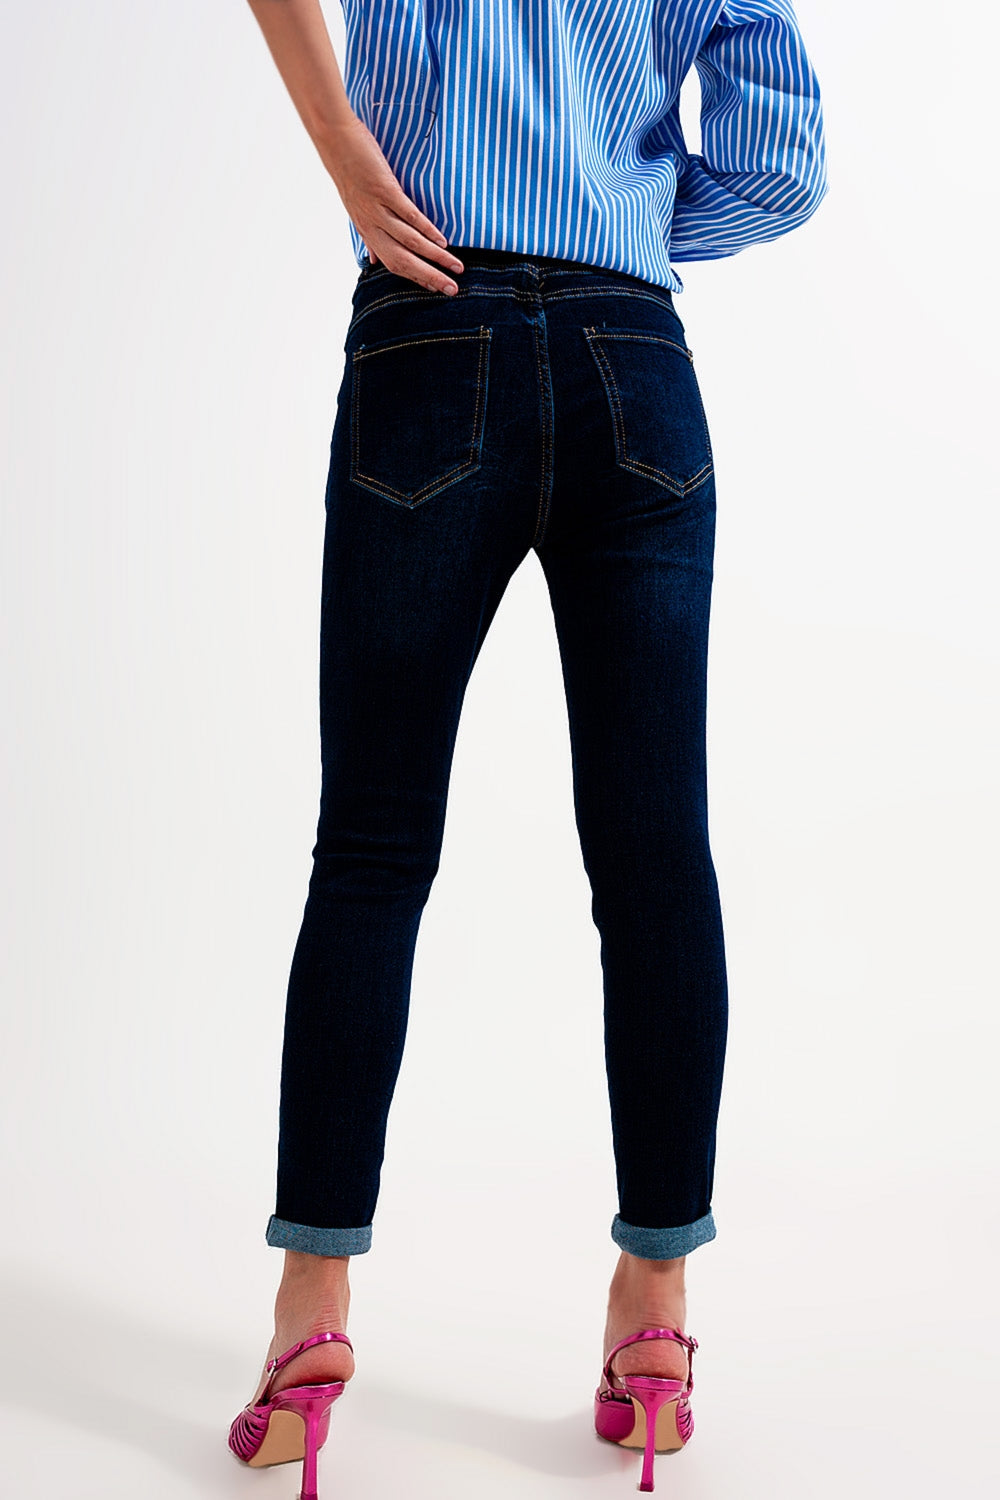 Skinny fit jeans dark blue wash Szua Store